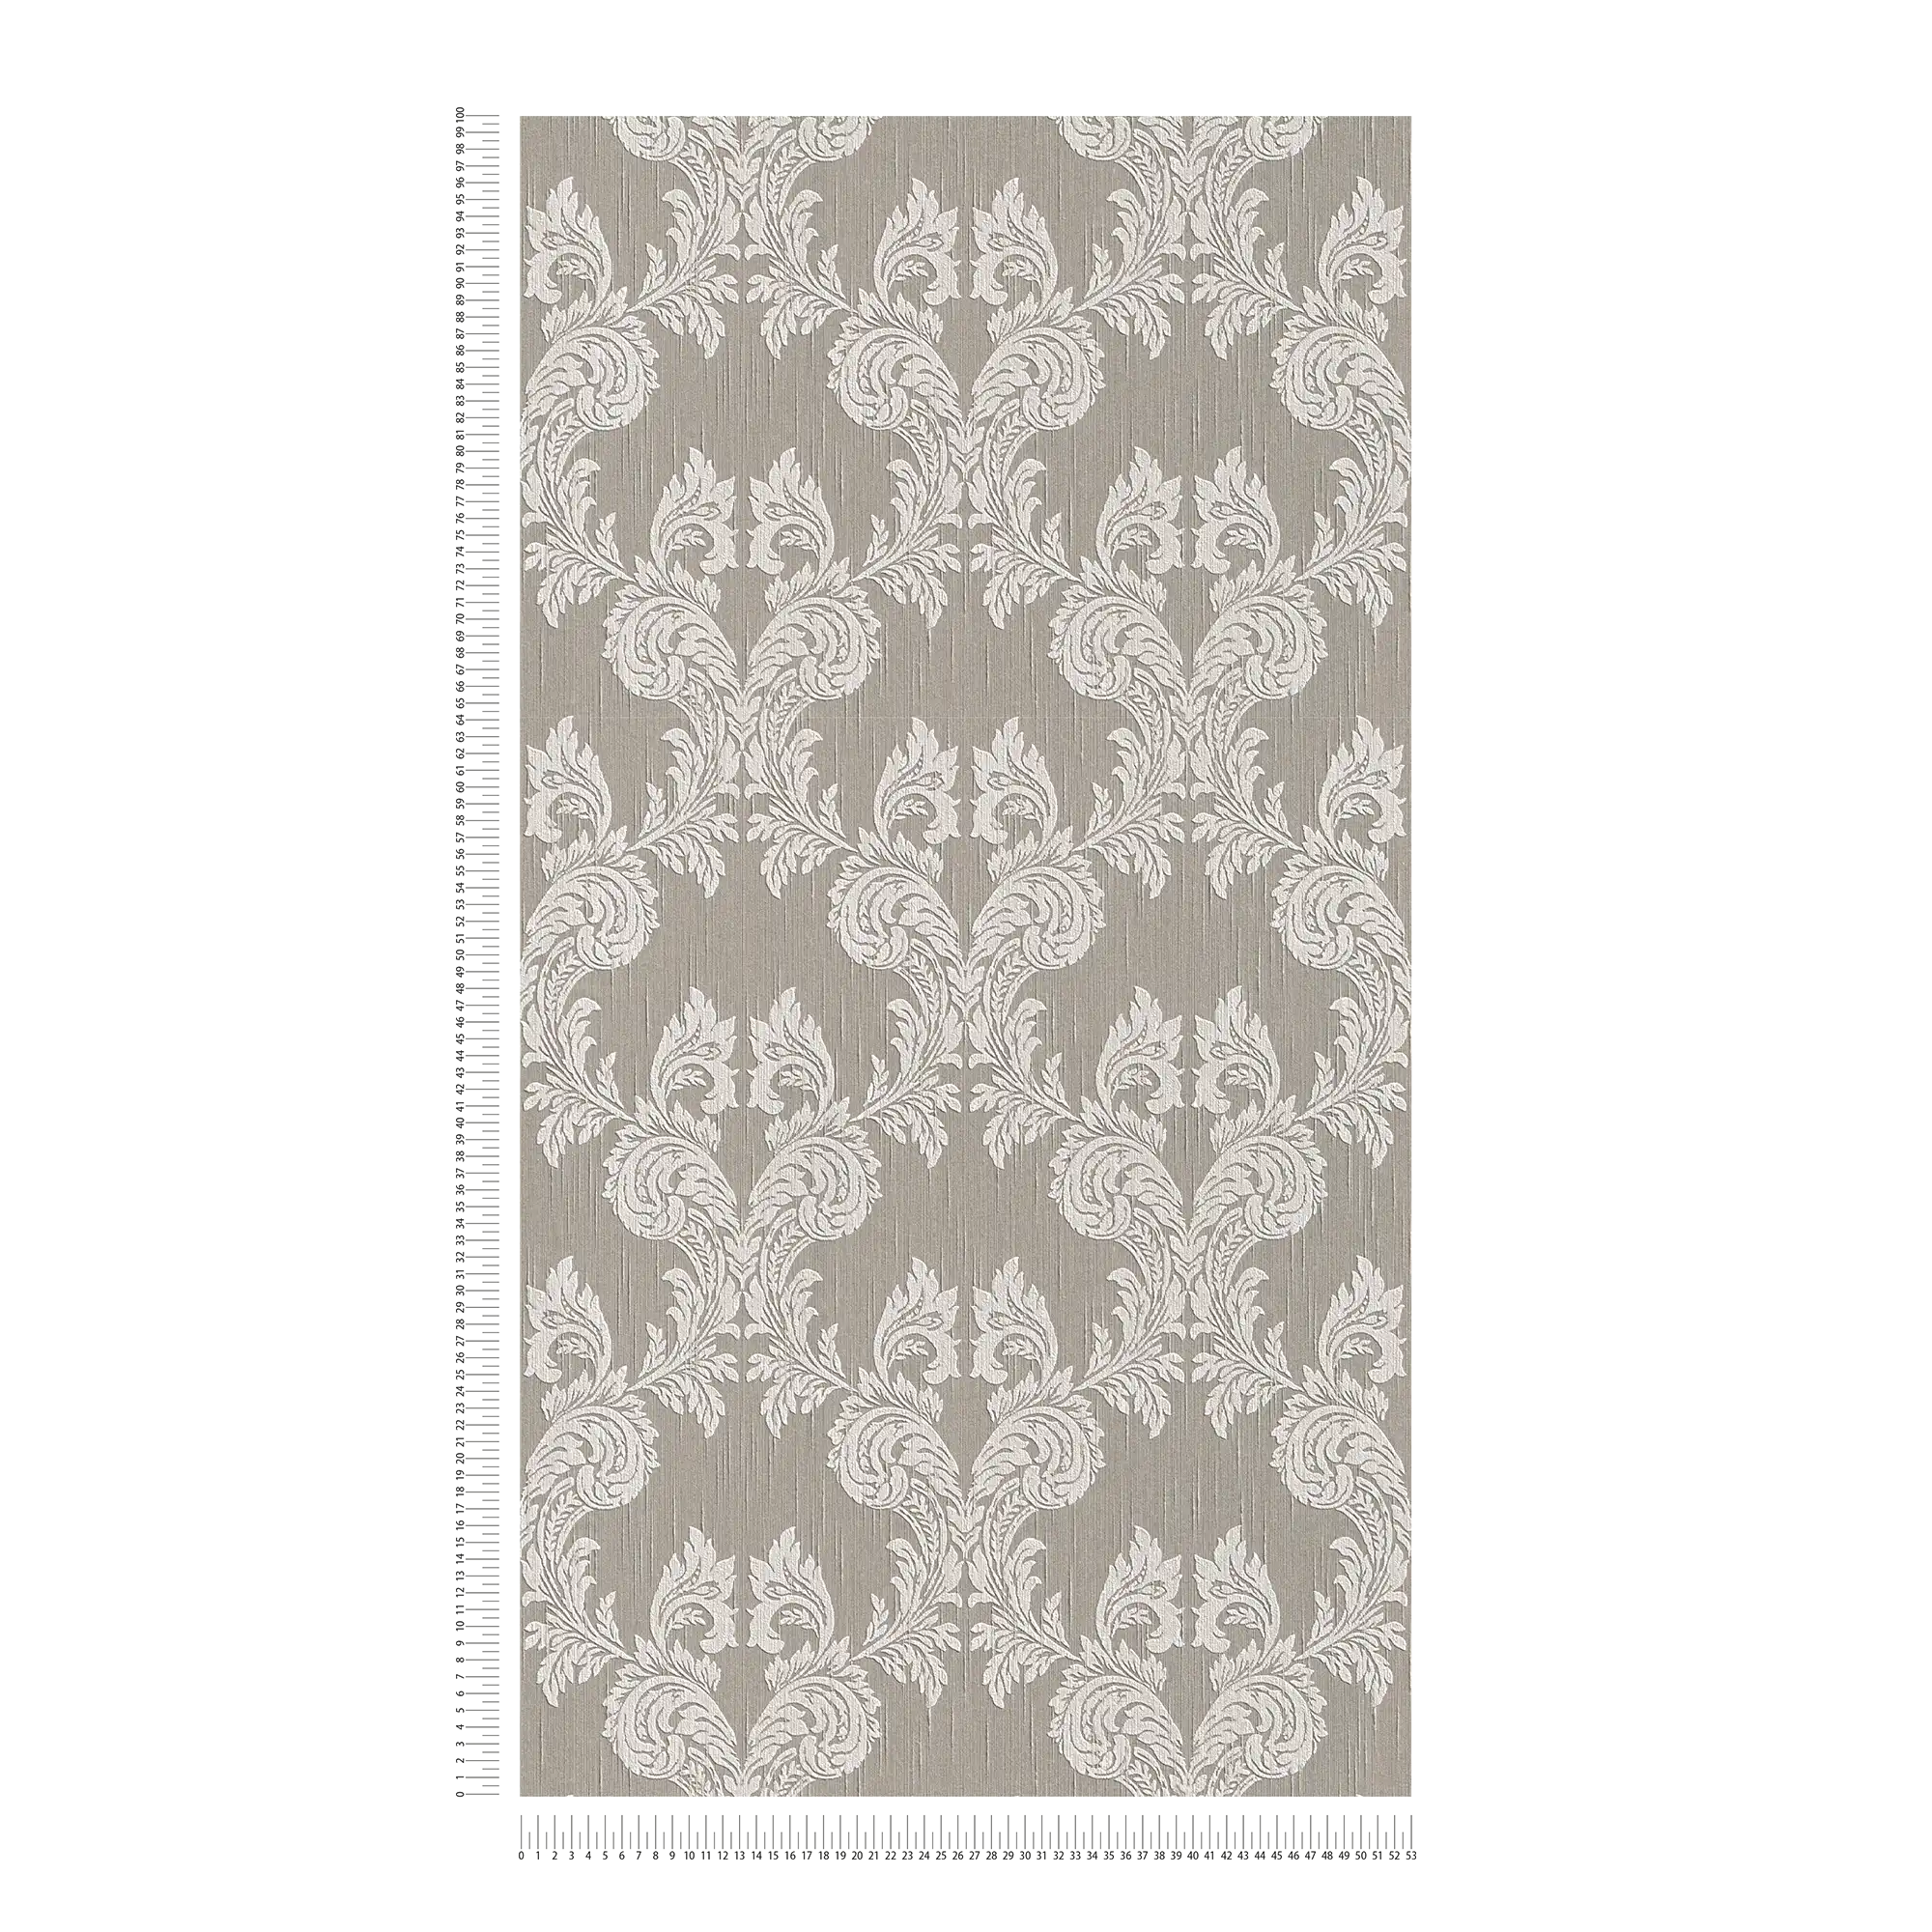             Papier peint Baroque ornements & design textile - beige, gris
        